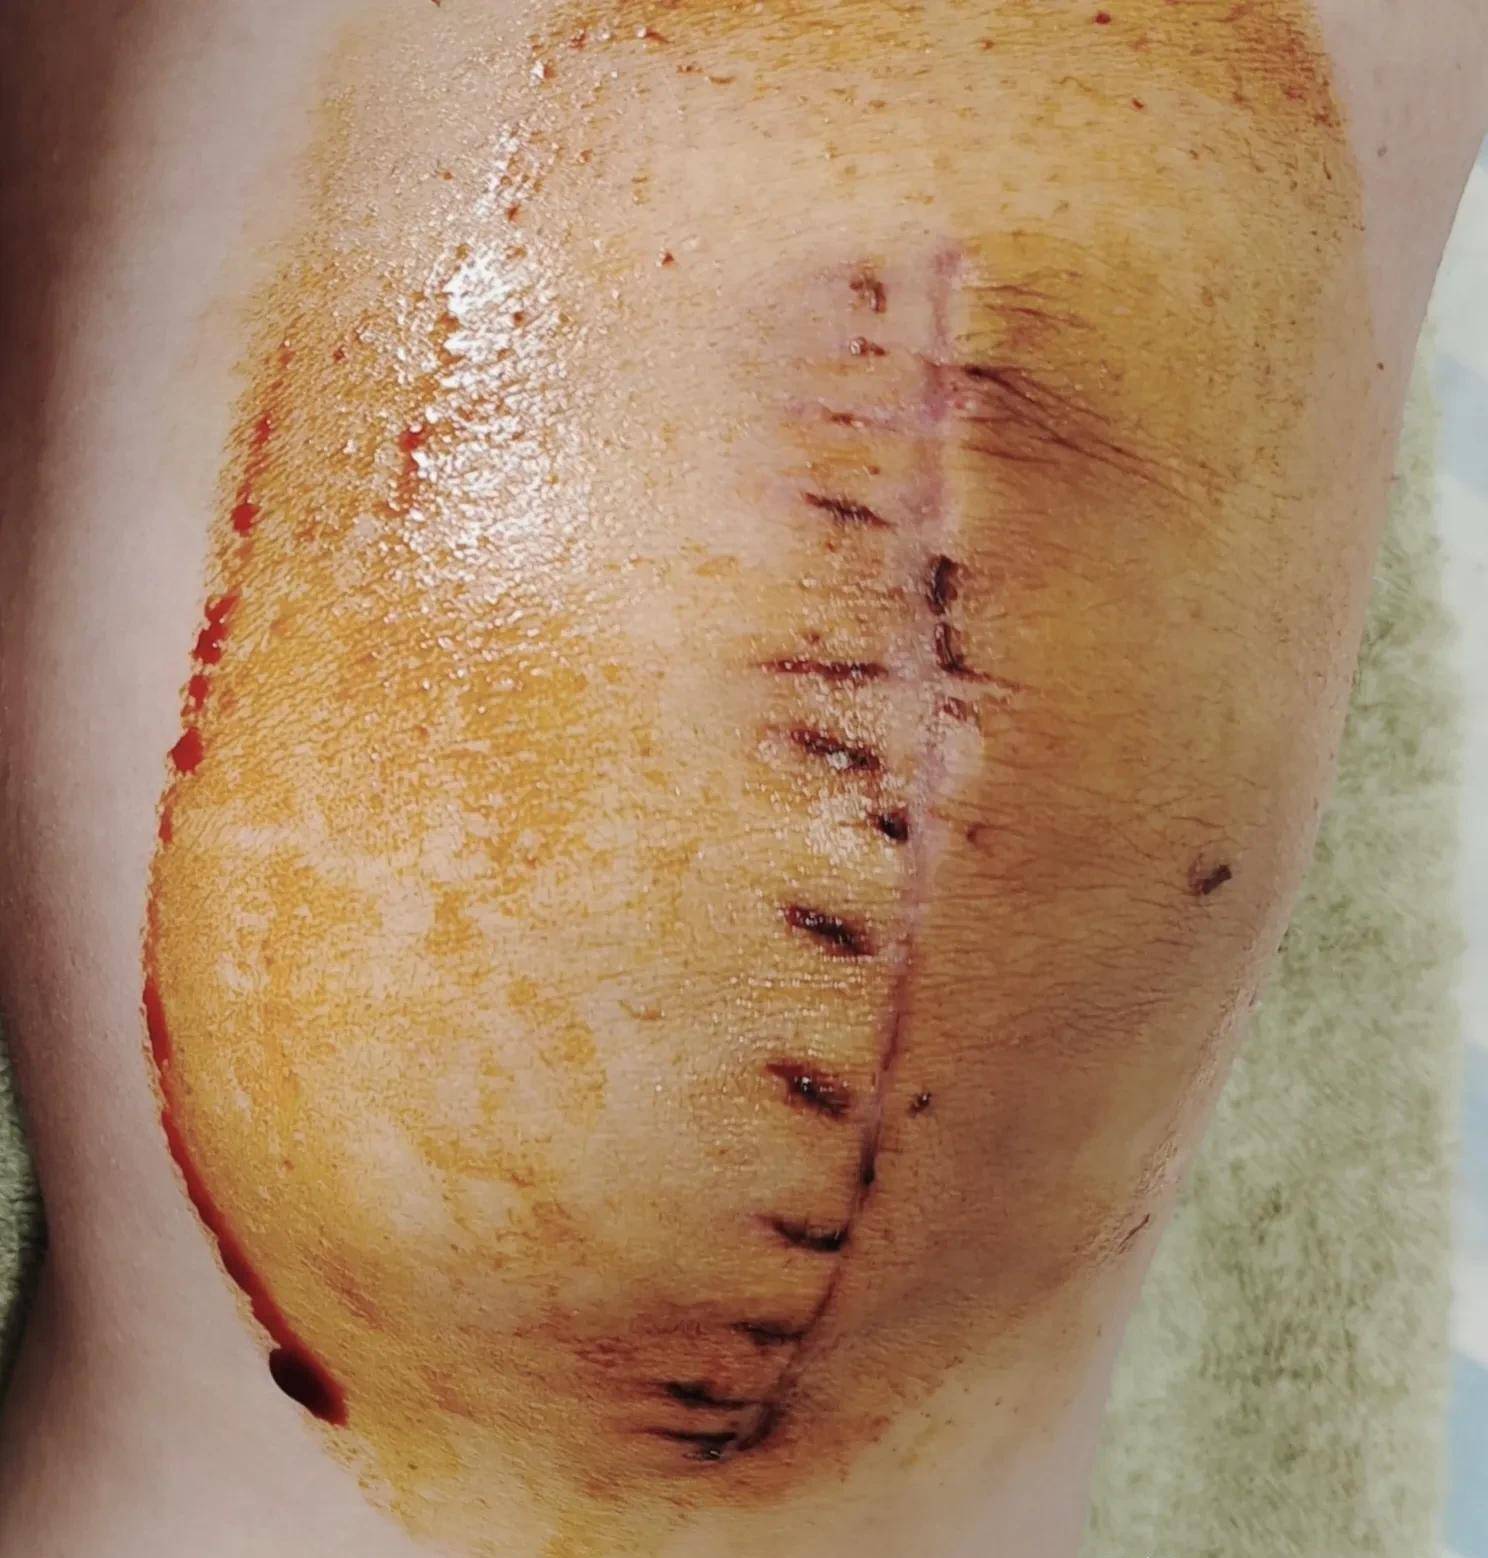 髌骨骨折术后第25天,伤口暴露以后加了针灸,推了疤痕